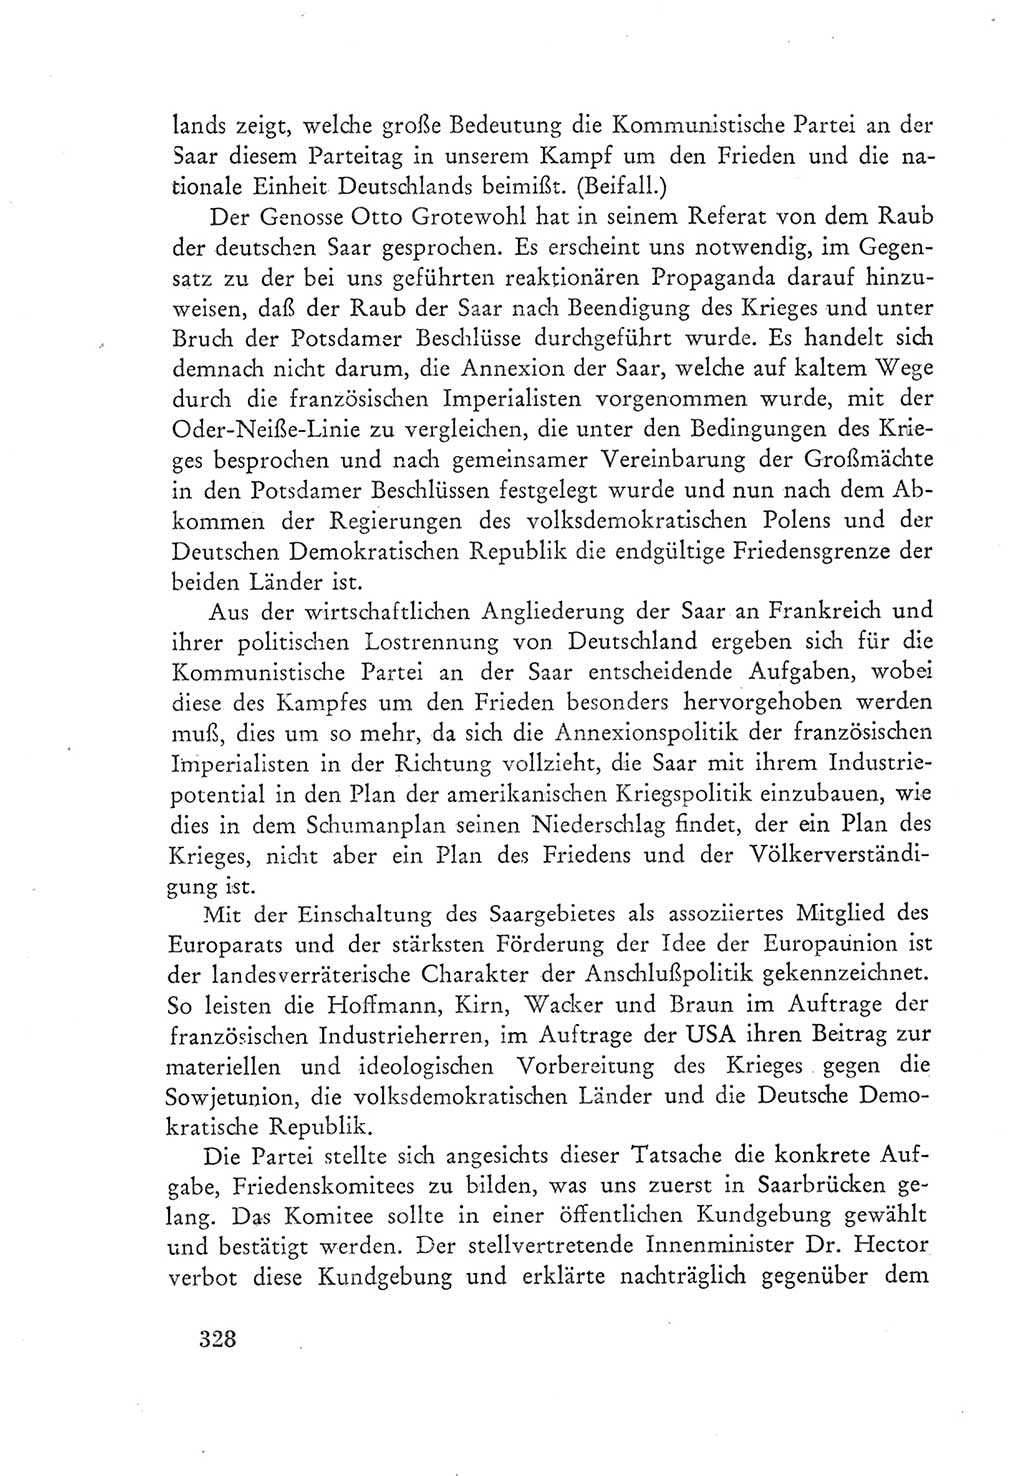 Protokoll der Verhandlungen des Ⅲ. Parteitages der Sozialistischen Einheitspartei Deutschlands (SED) [Deutsche Demokratische Republik (DDR)] 1950, Band 1, Seite 328 (Prot. Verh. Ⅲ. PT SED DDR 1950, Bd. 1, S. 328)